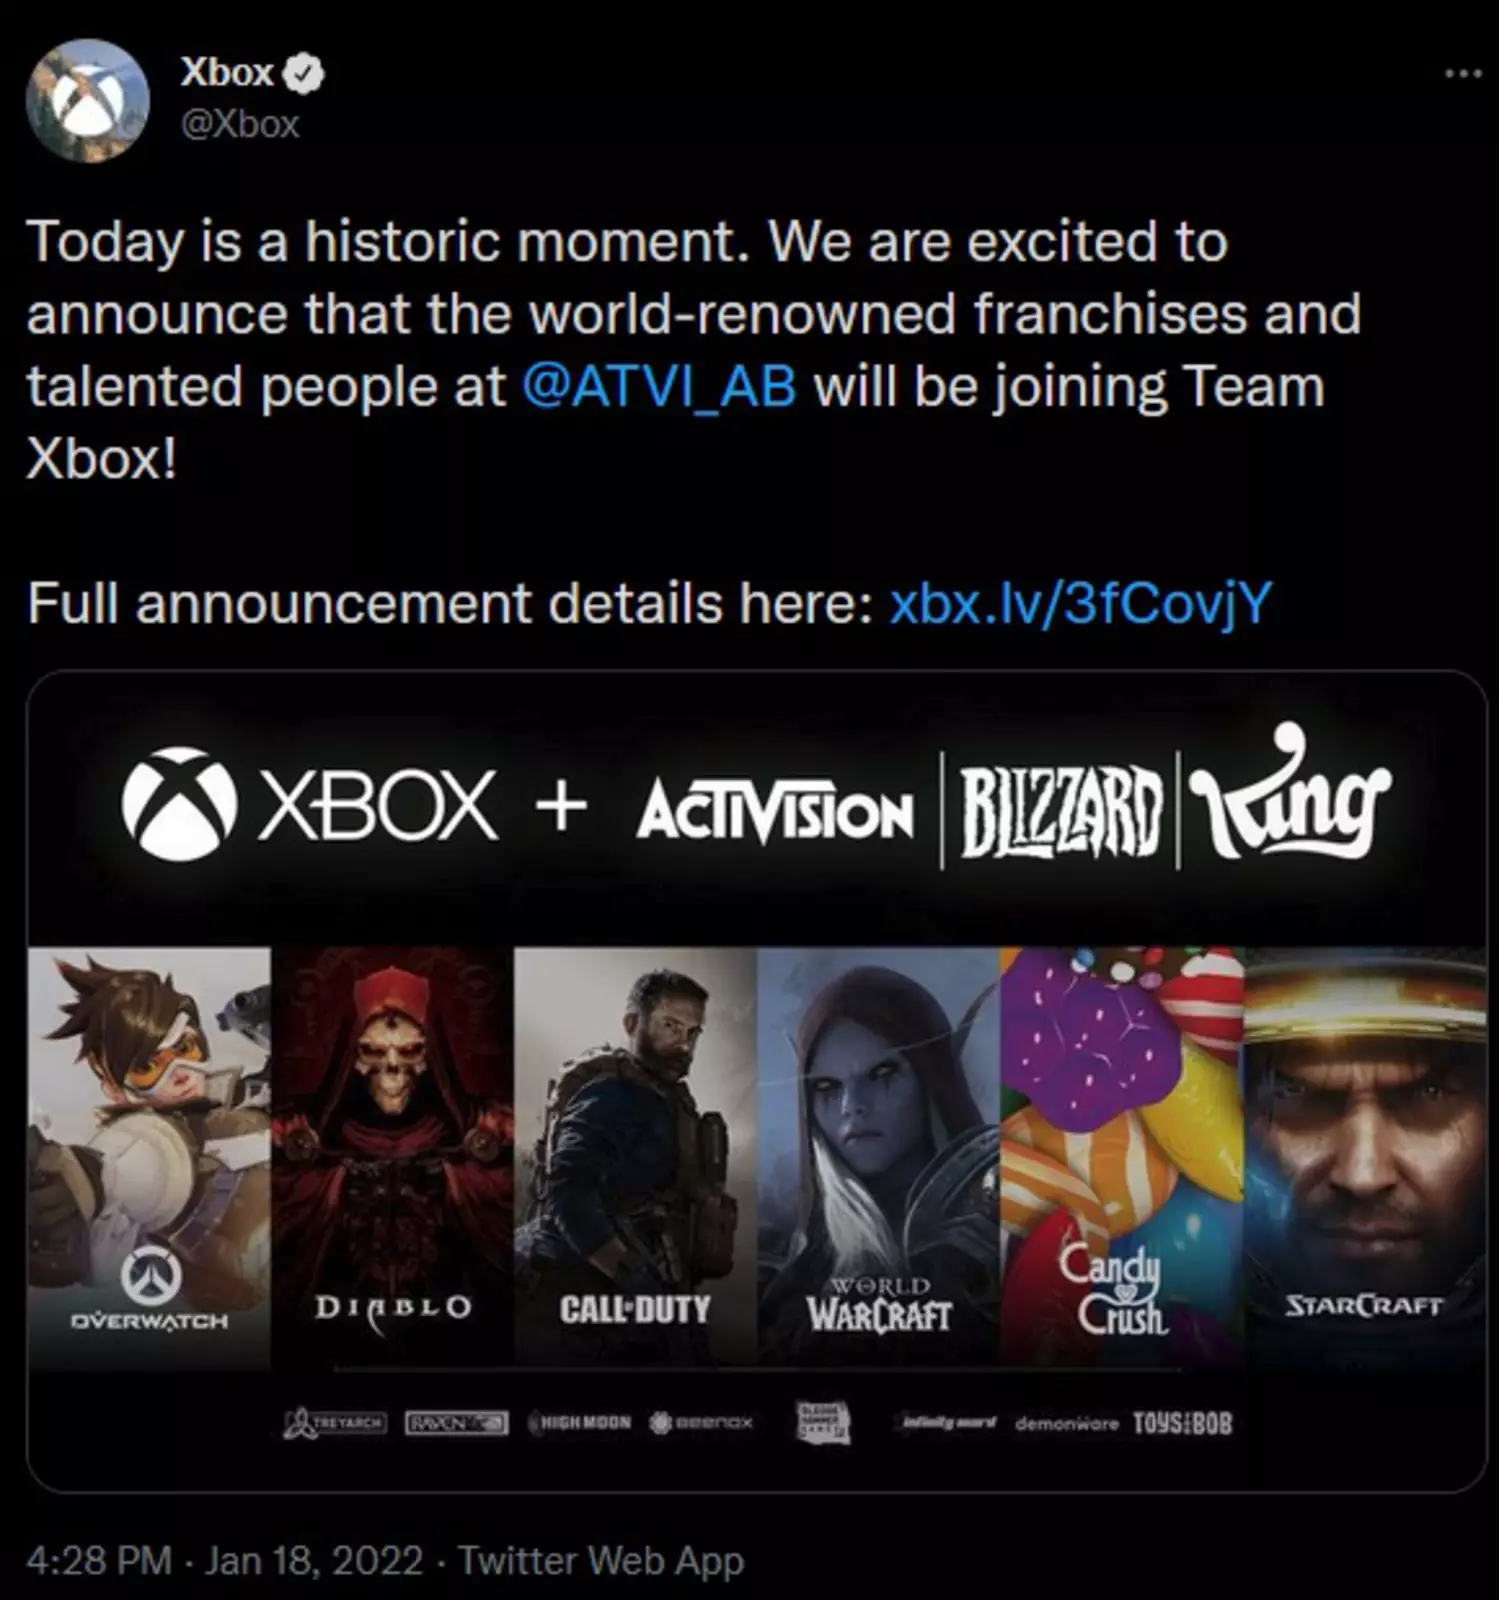 Официальная страница Xbox подтвердила совершение масштабной сделки.